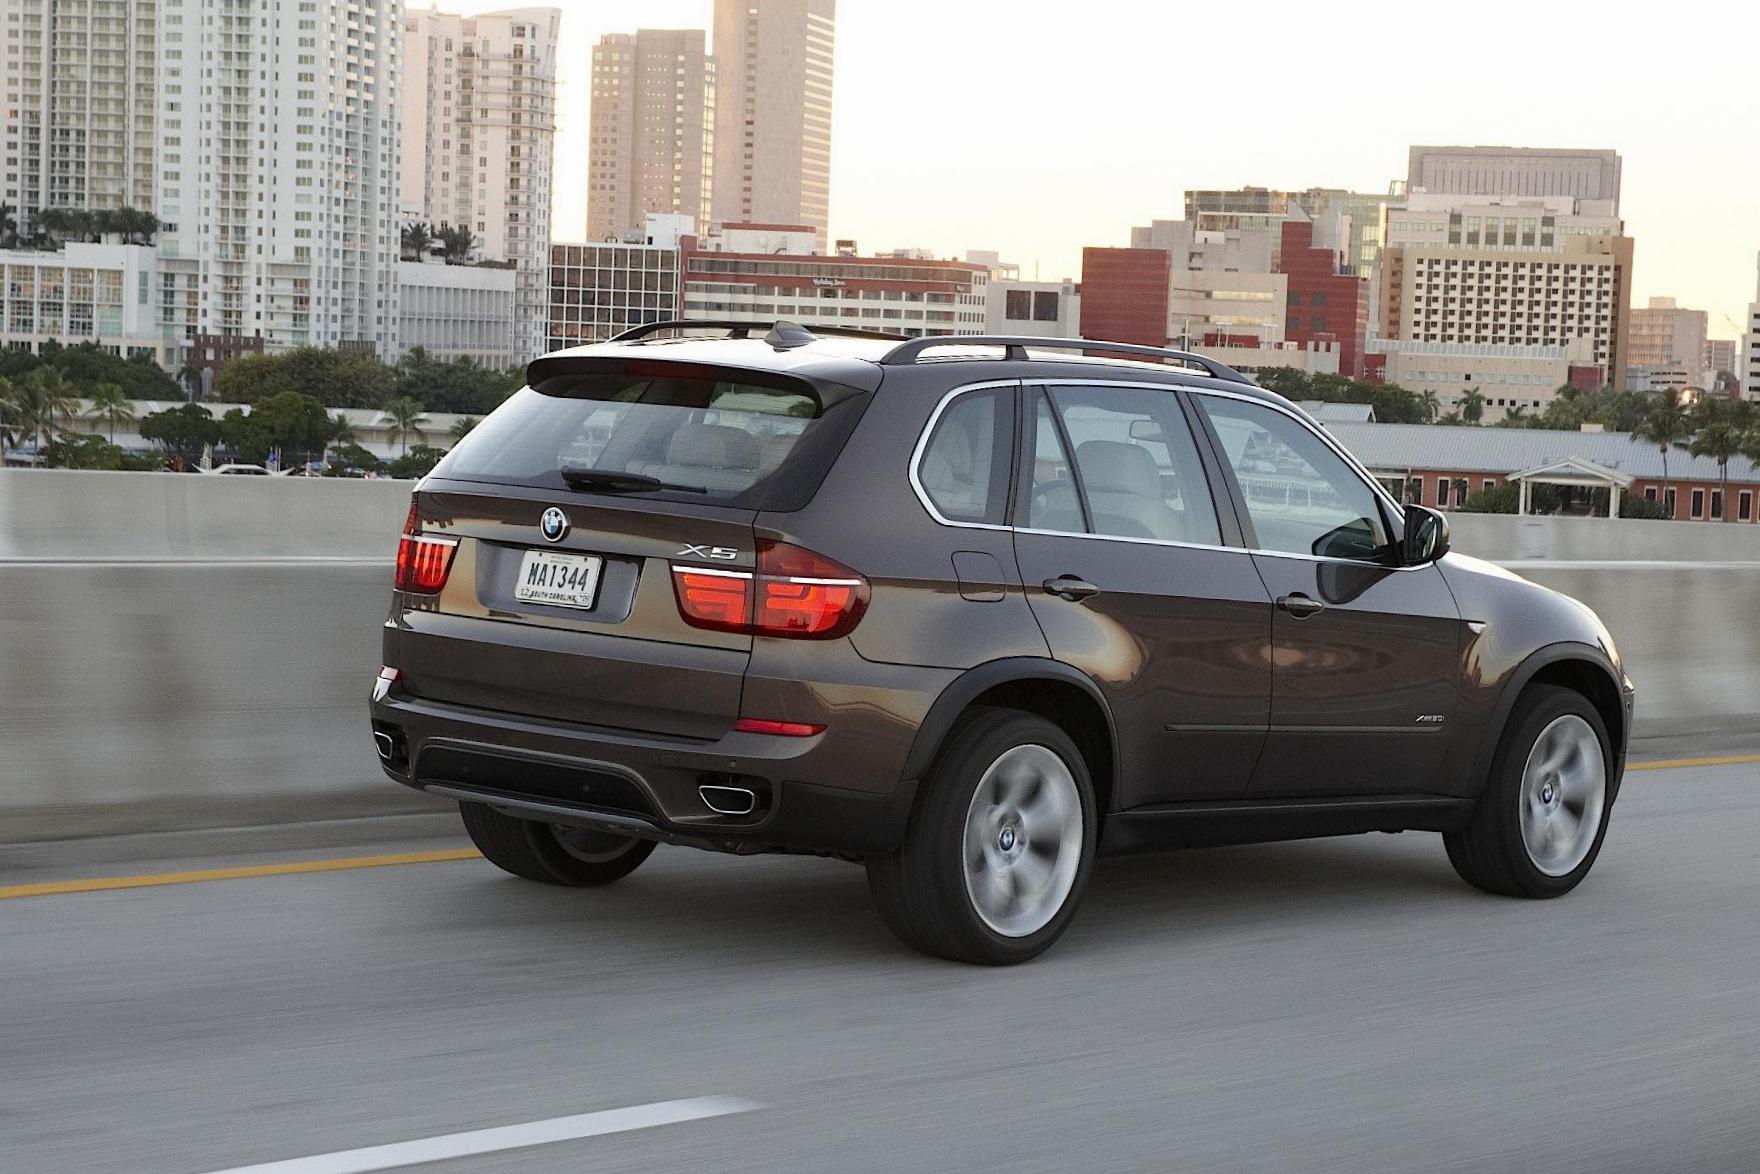 X5 (E70) BMW review 2015